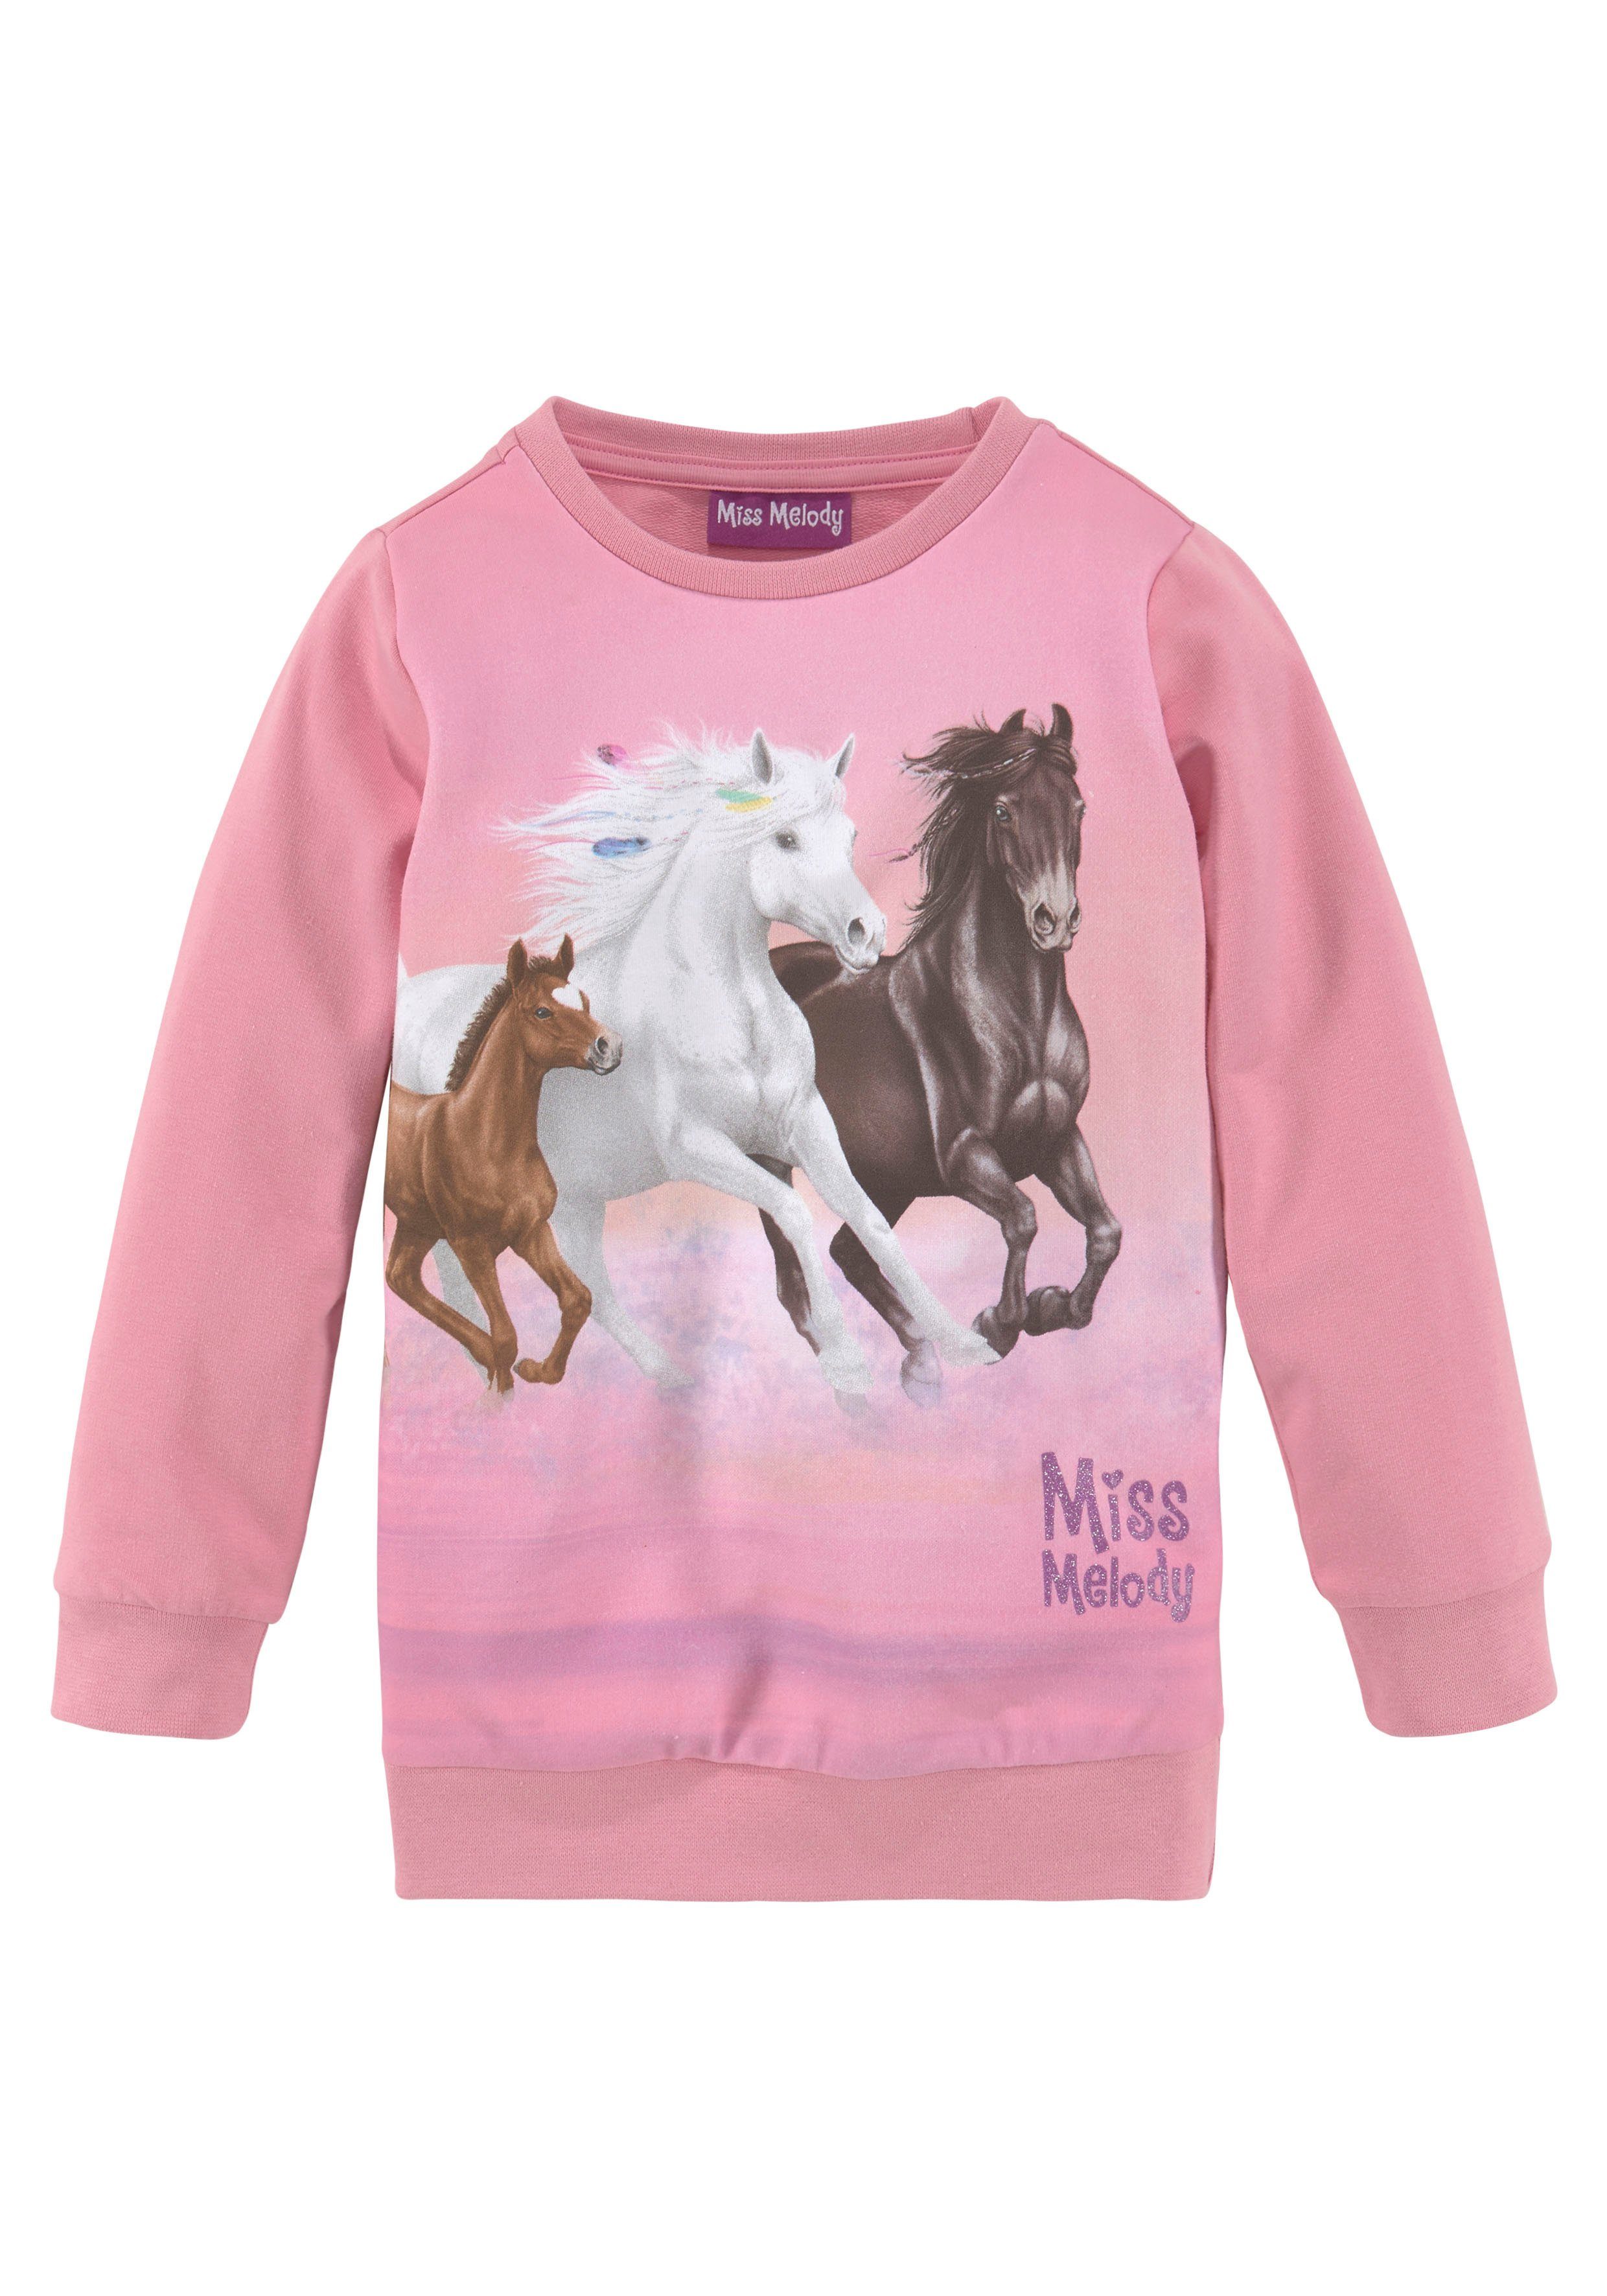 Pferdefreunde für Miss Melody Longsweatshirt